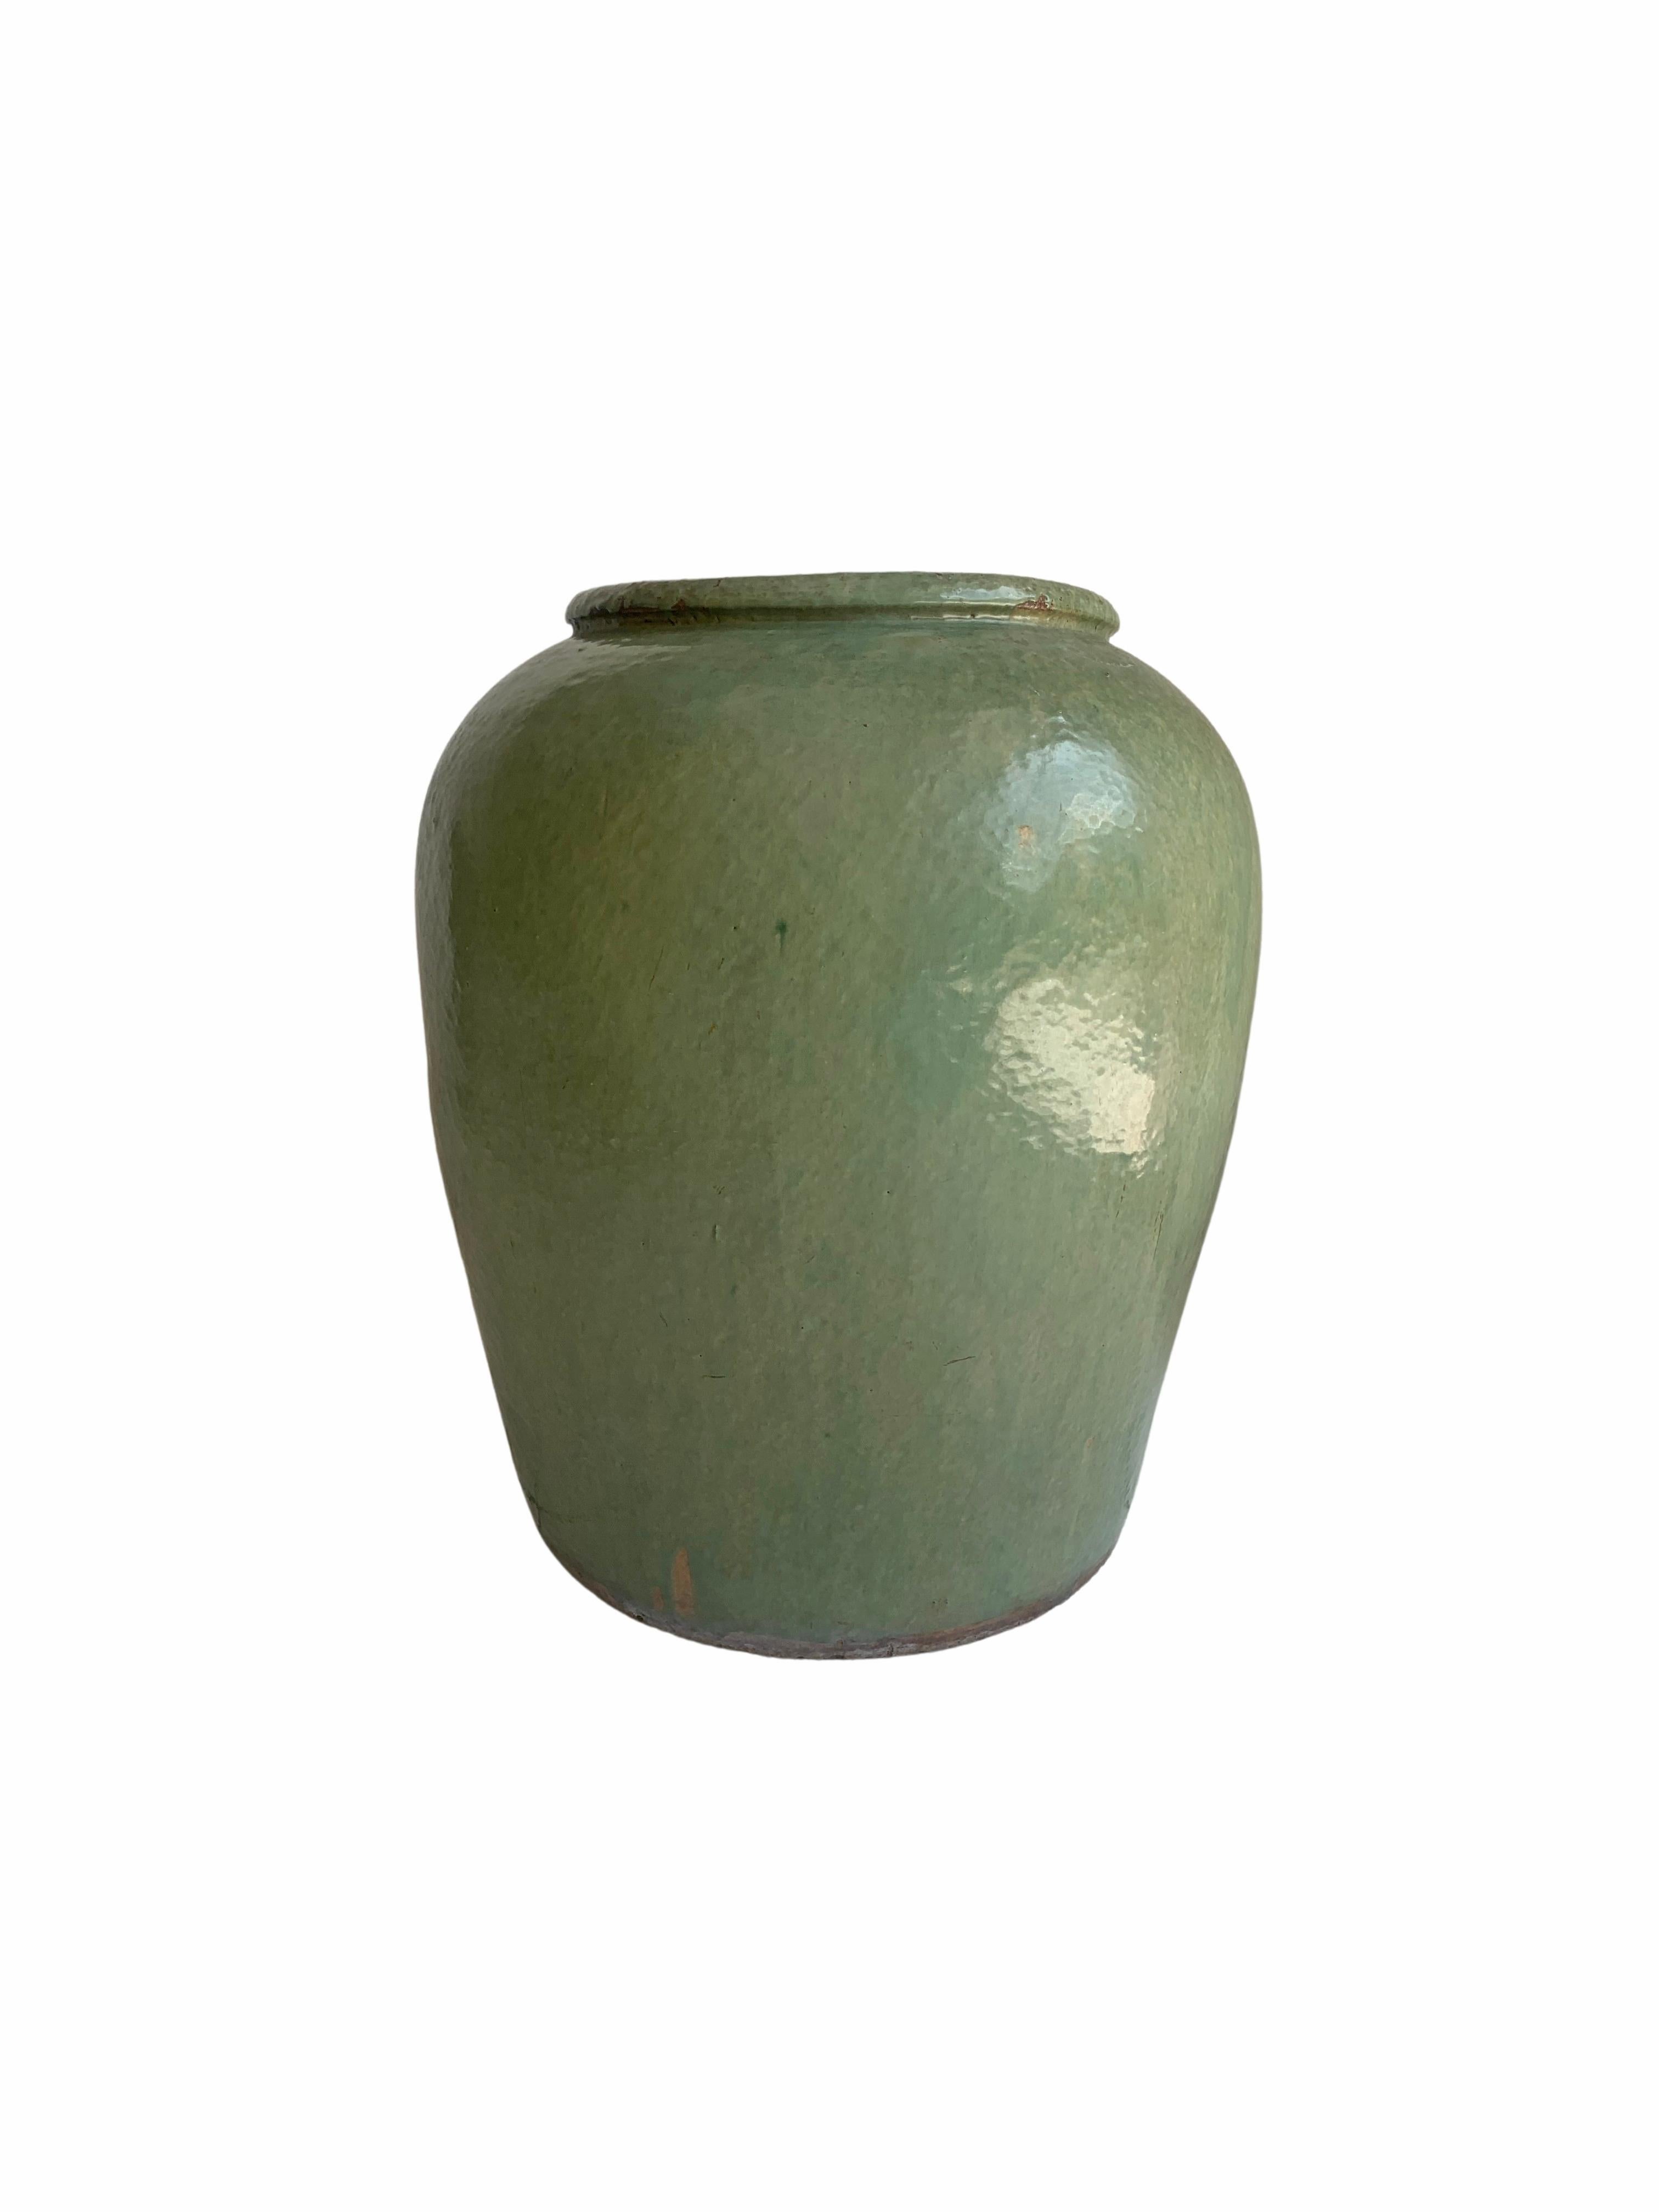 Qing Chinese Green Glazed Celadon Pickling Jar c. 1950